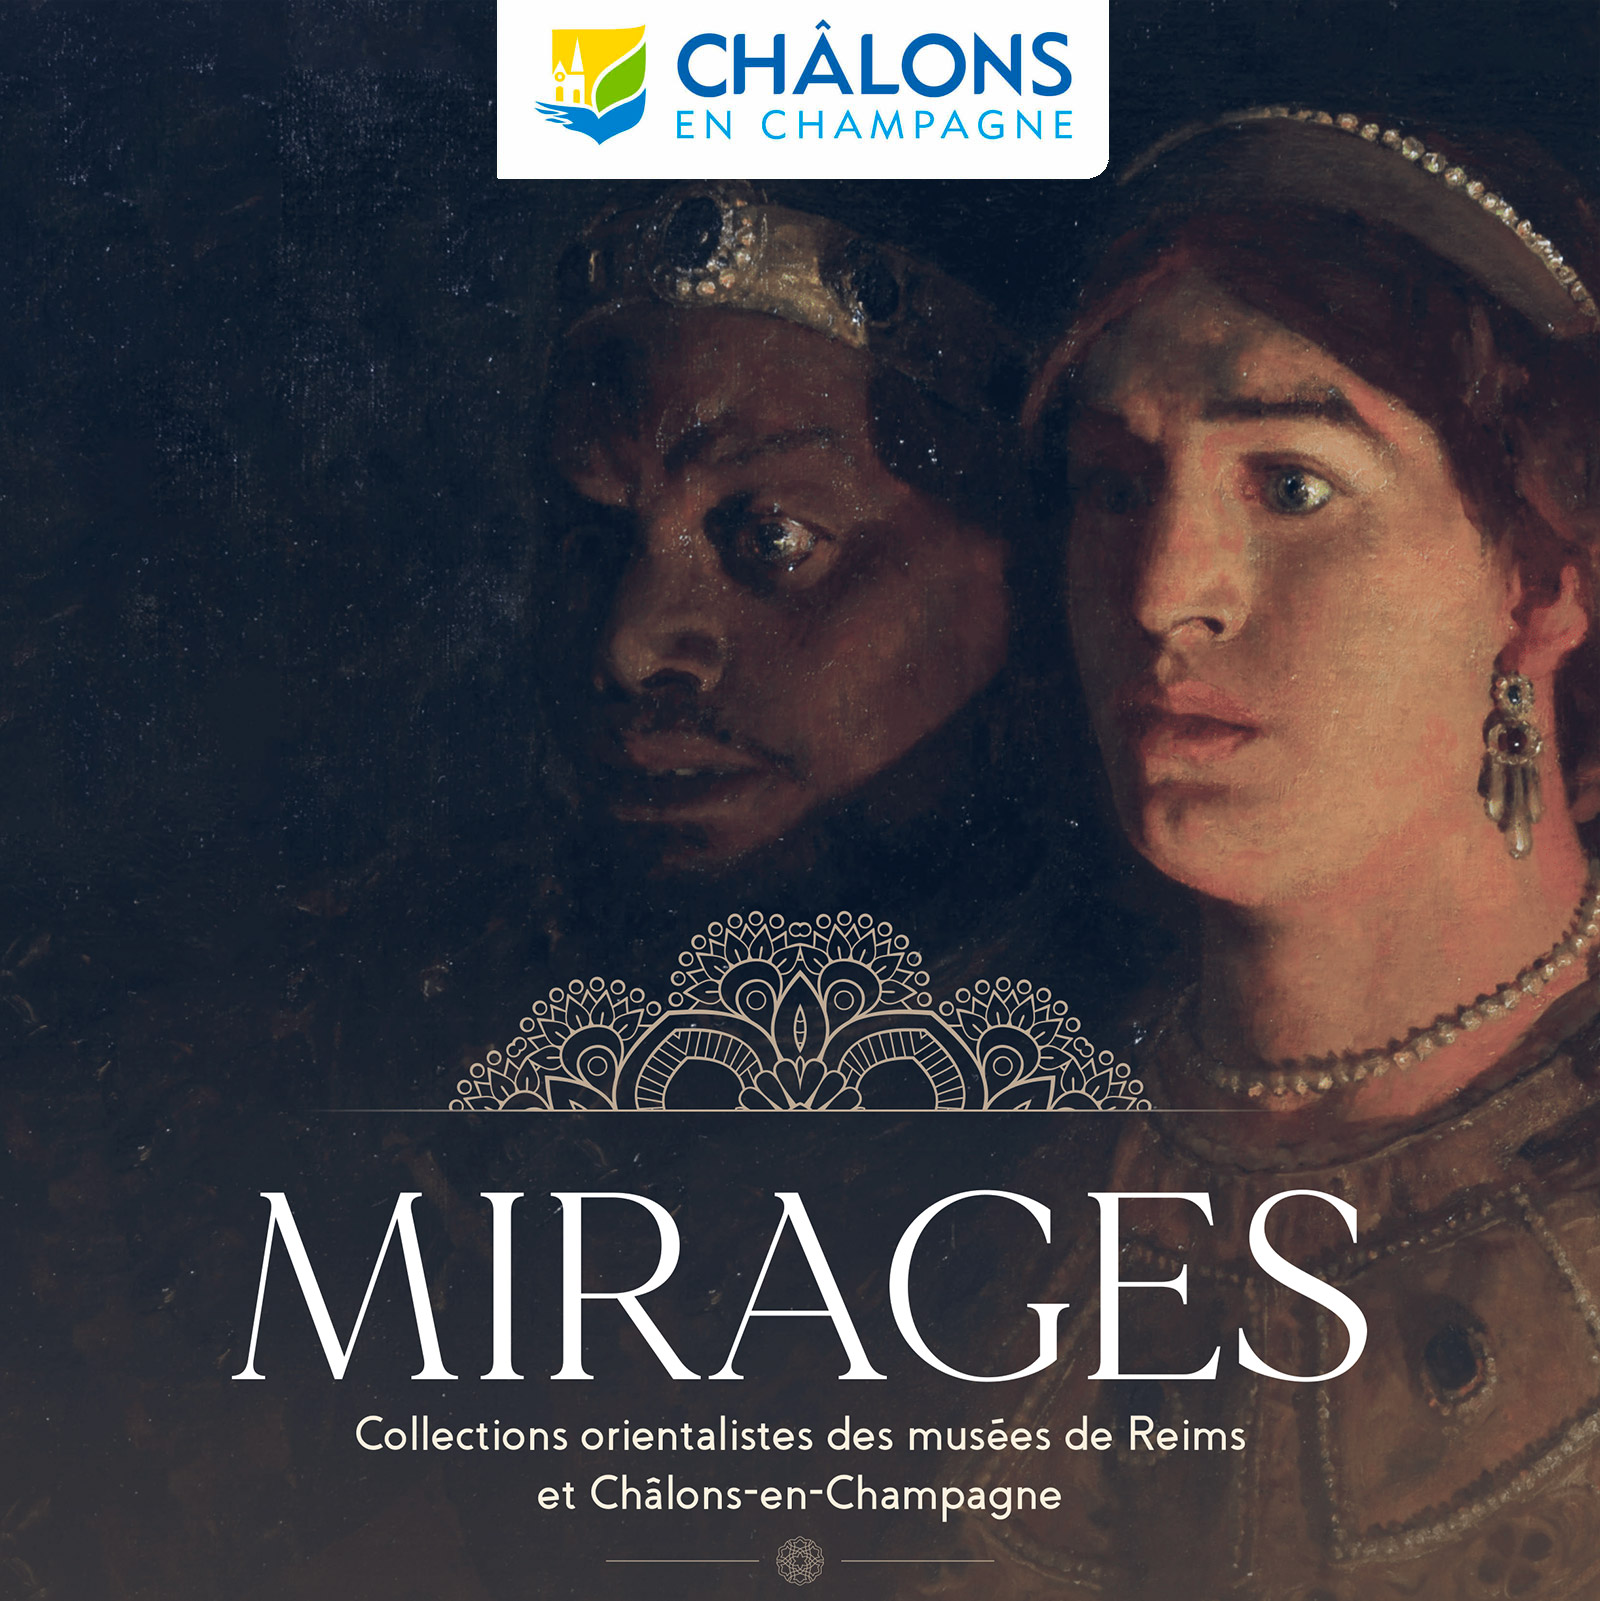 Mirages, collections orientalistes des musées de Reims et Châlons-en-Champagne